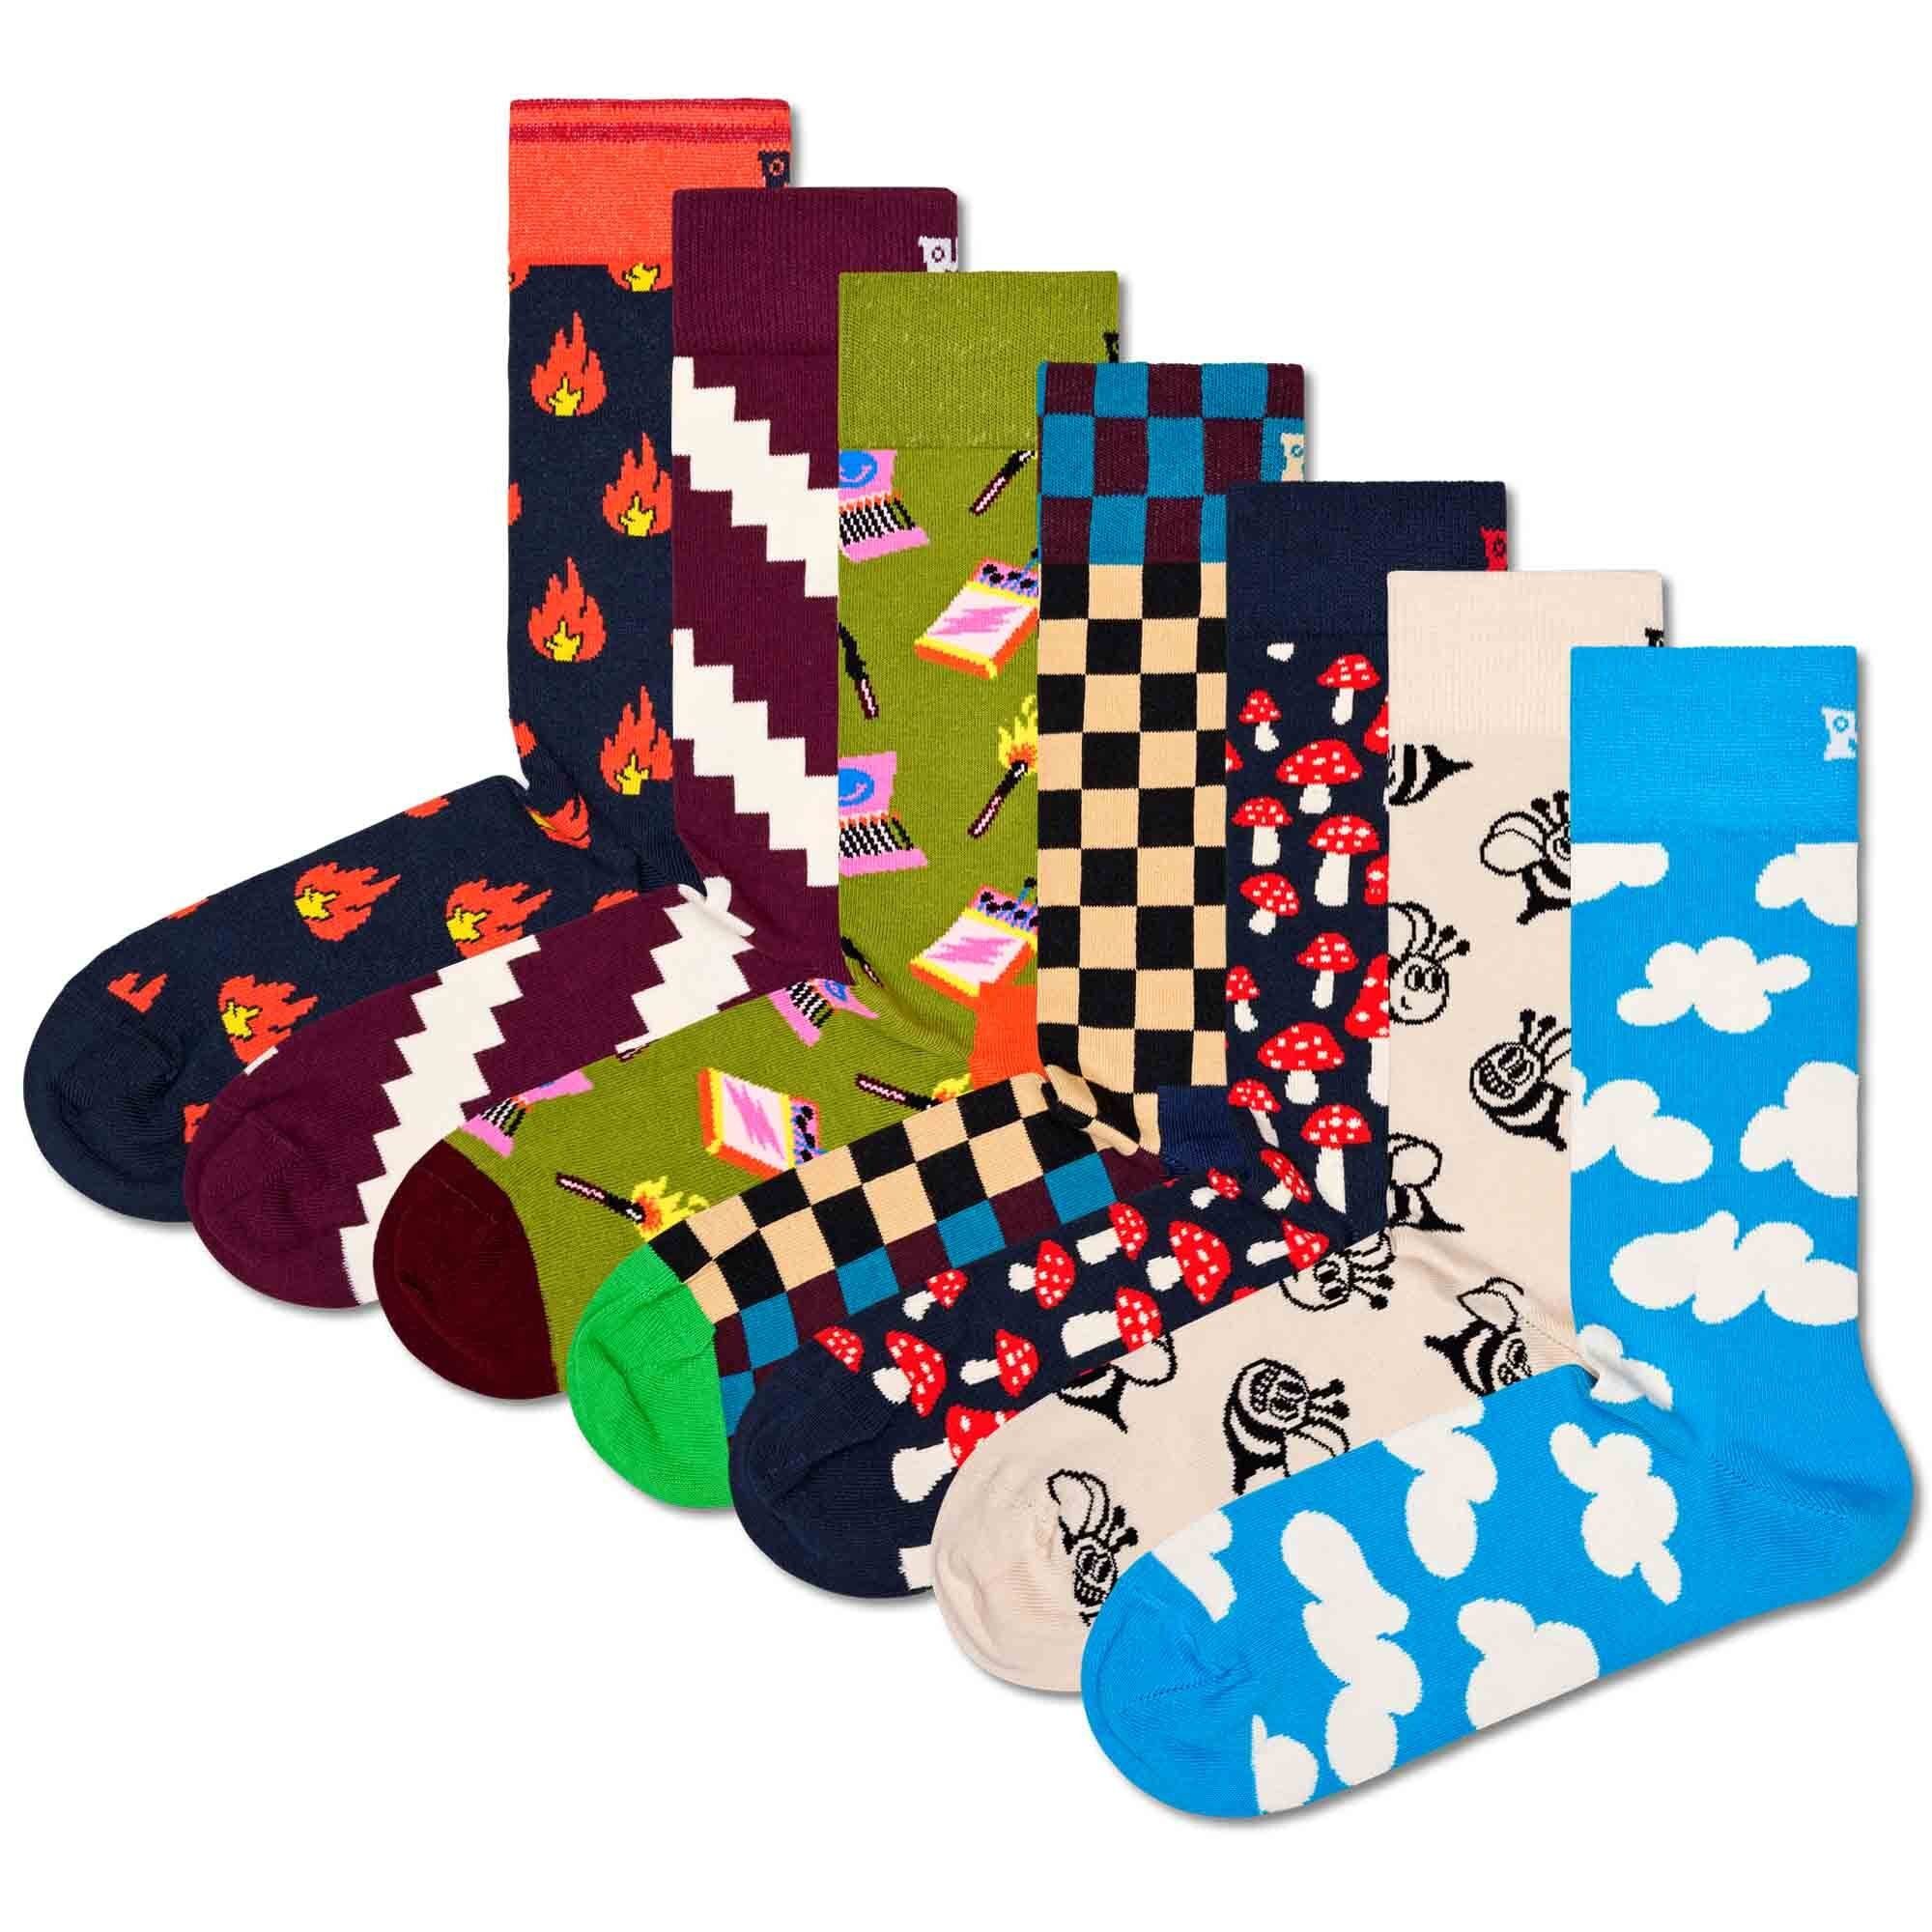 Happy Socks Kurzsocken Unisex Socken, 7er Pack, Geschenkbox, Happy Socks  Socken